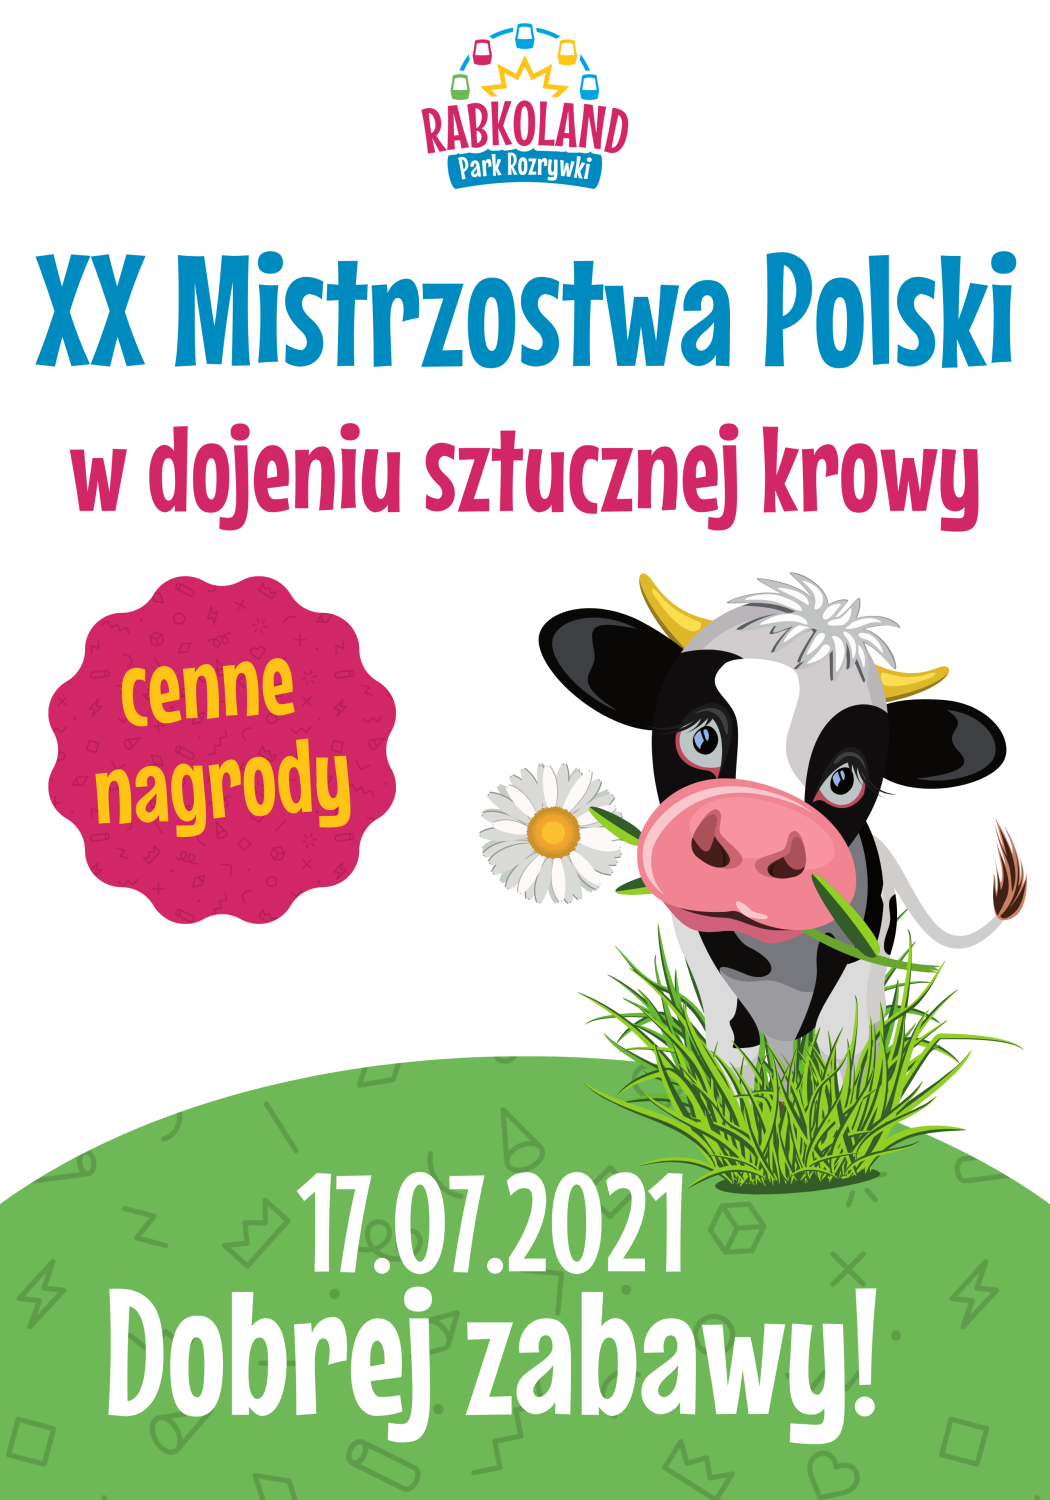 Rabkoland Mistrzostwa Polski w dojeniu sztucznej krowy